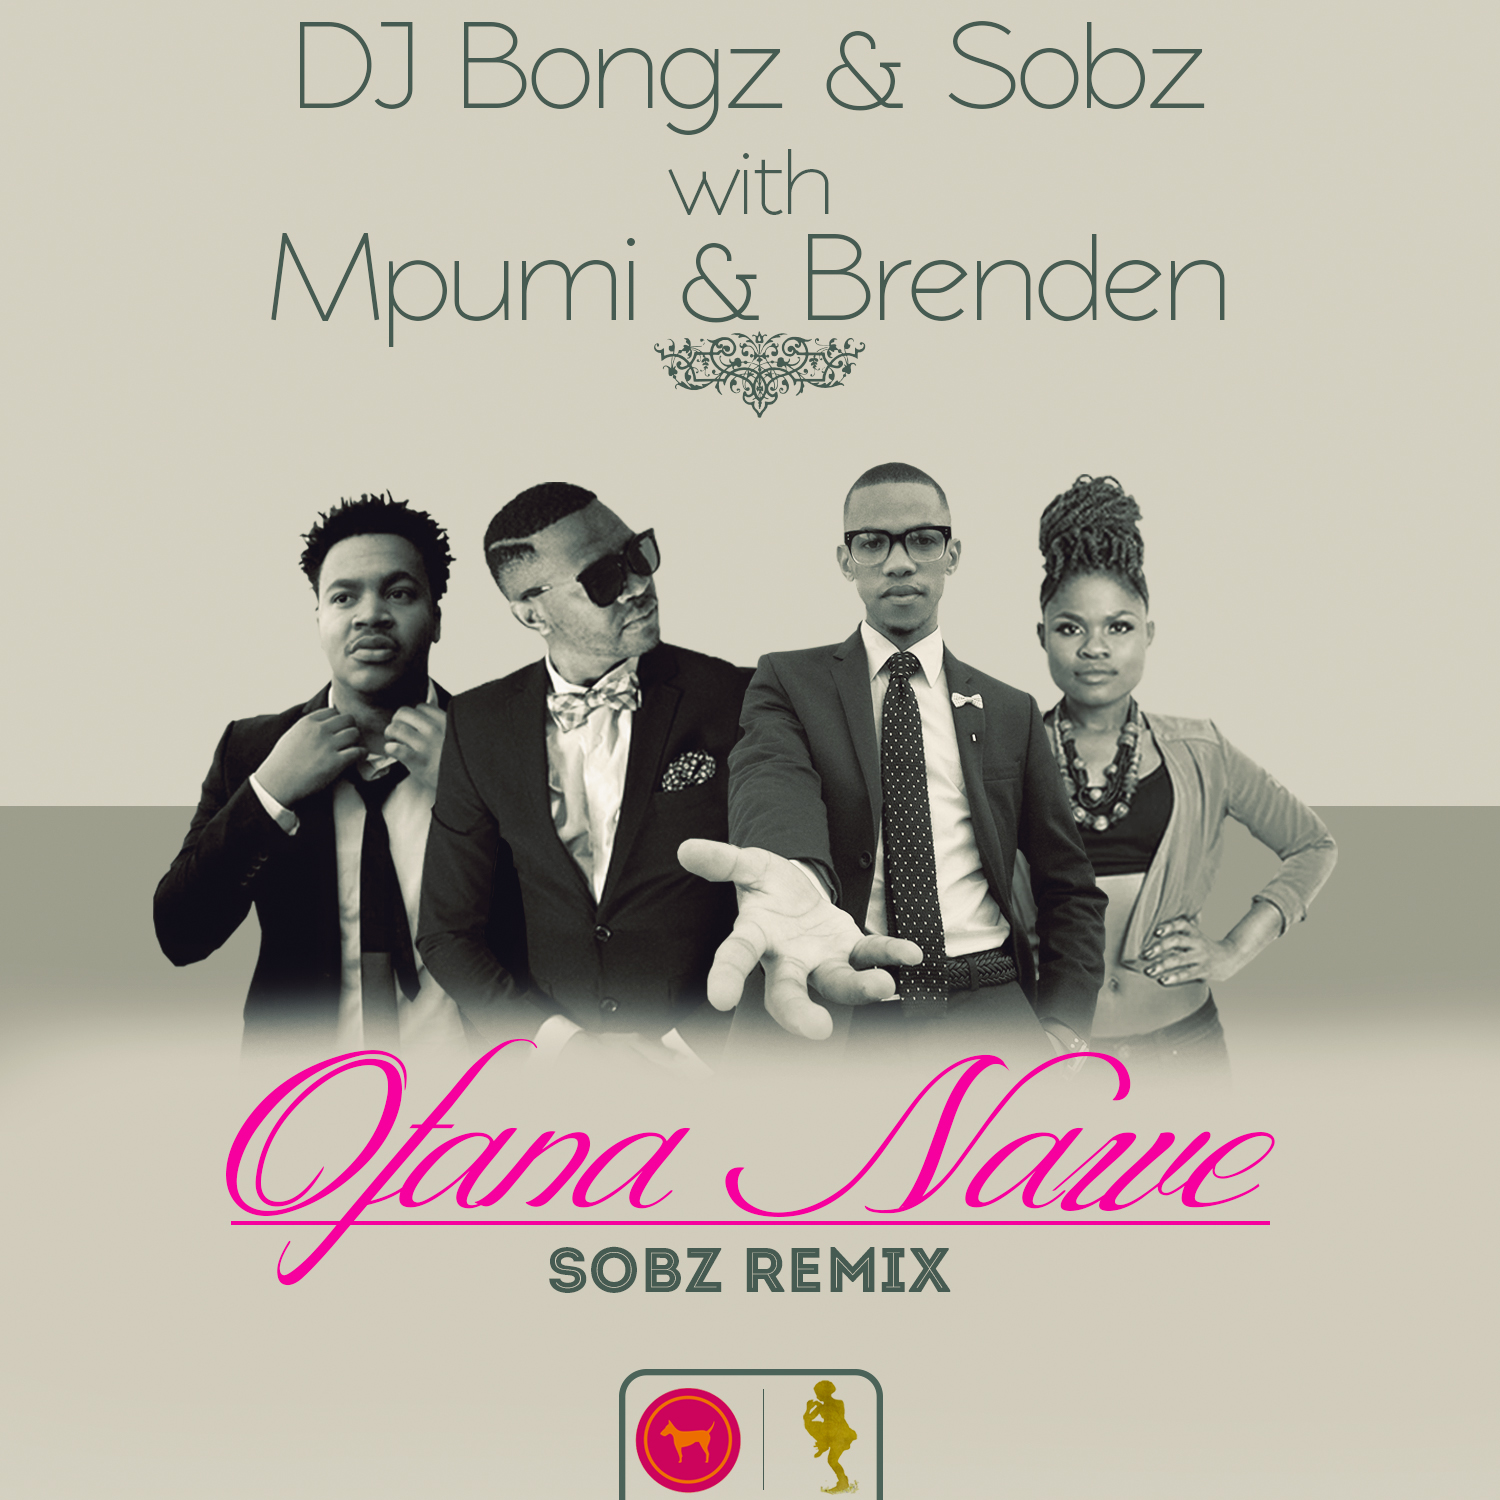 DJ Bongz & Sobz w Mpumi & Brenden - Ofana Nawe(Sobz Remix) / SLO025